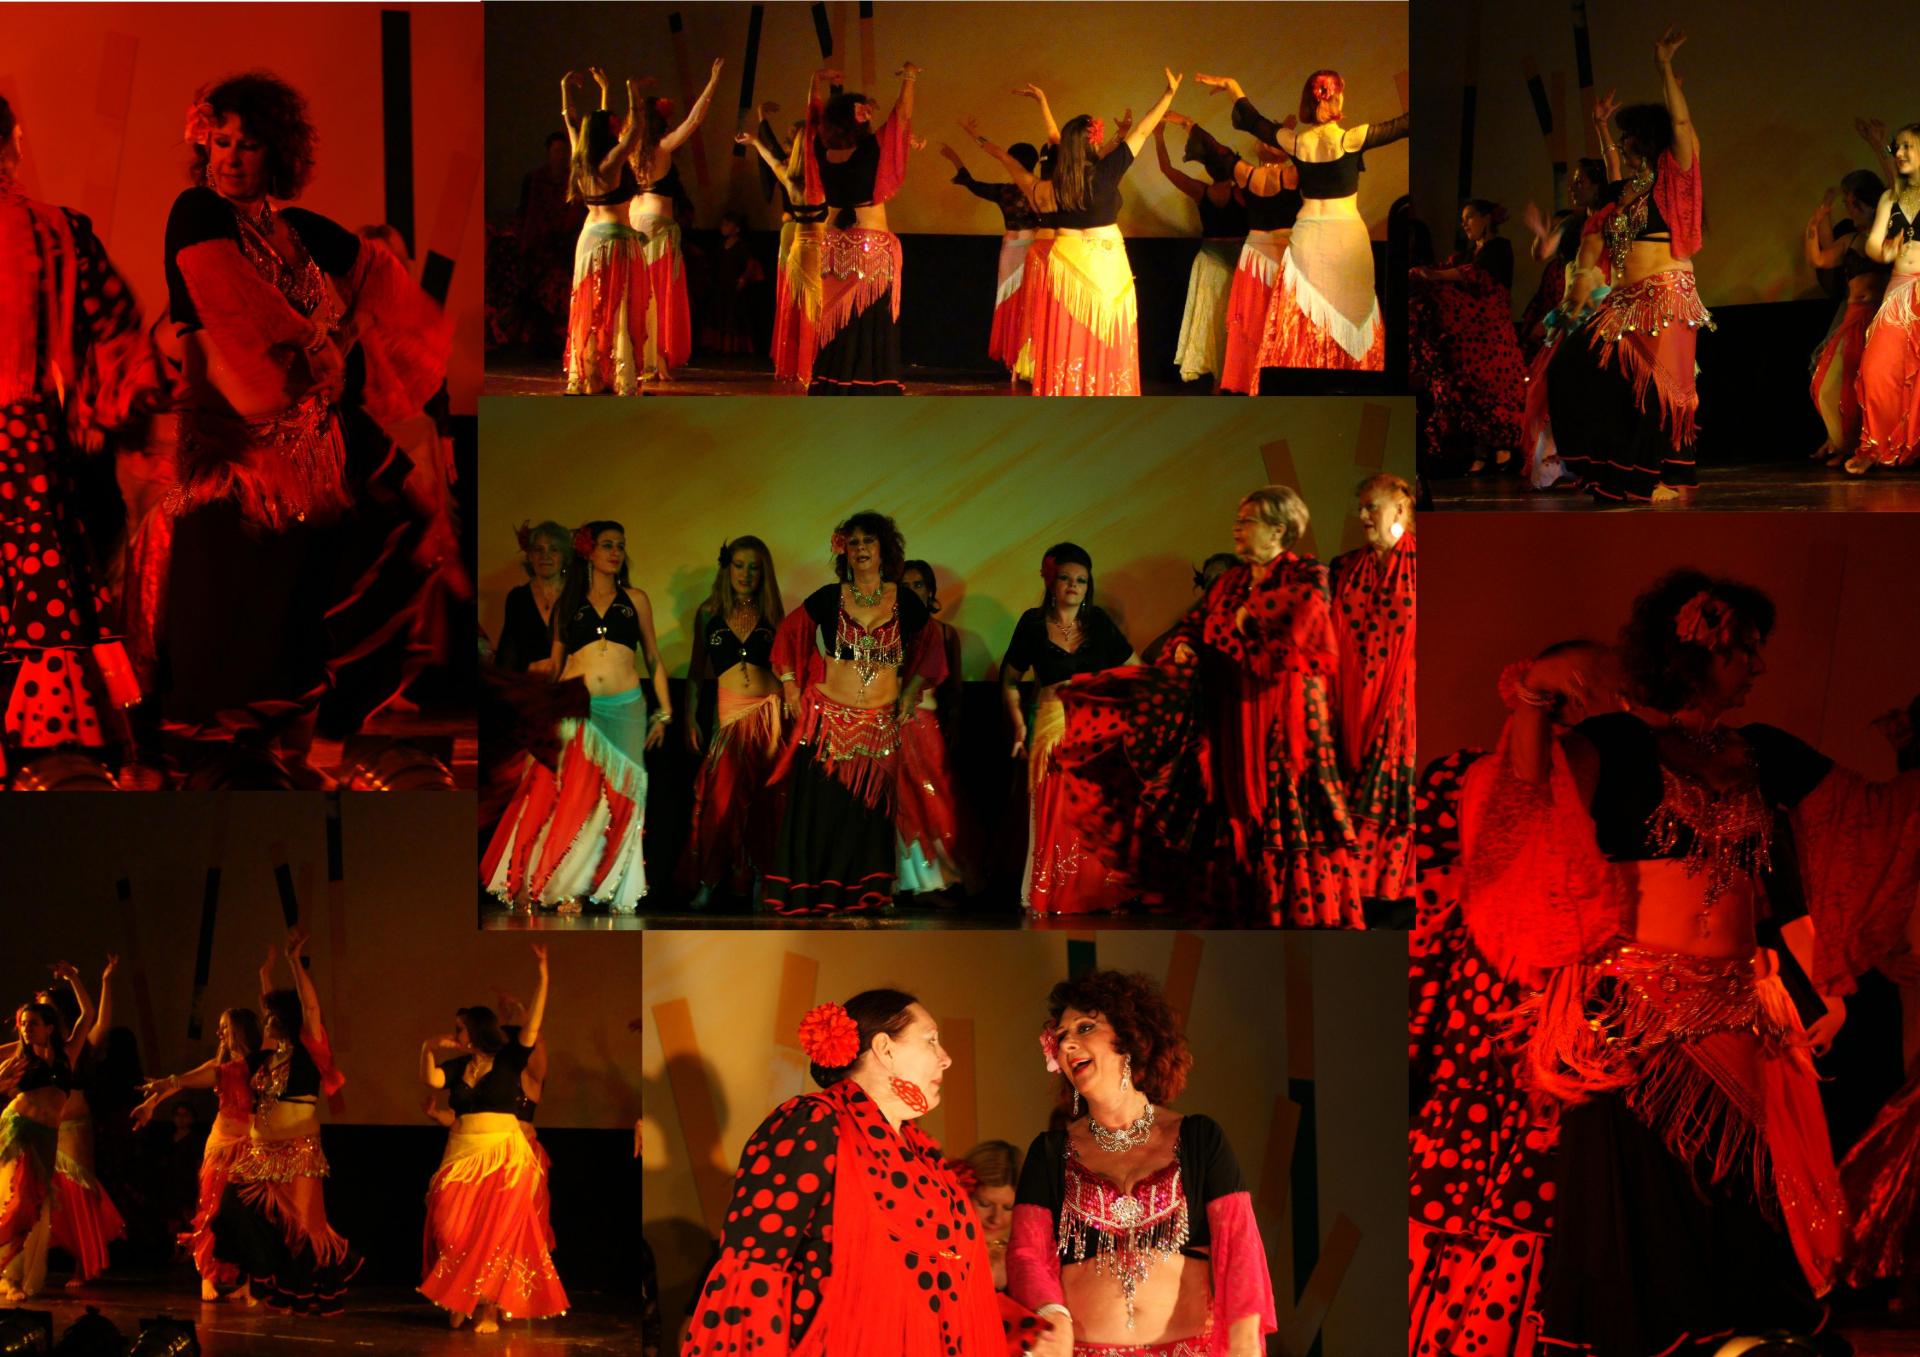 Danse espagnole orientale kopytko sheherazade